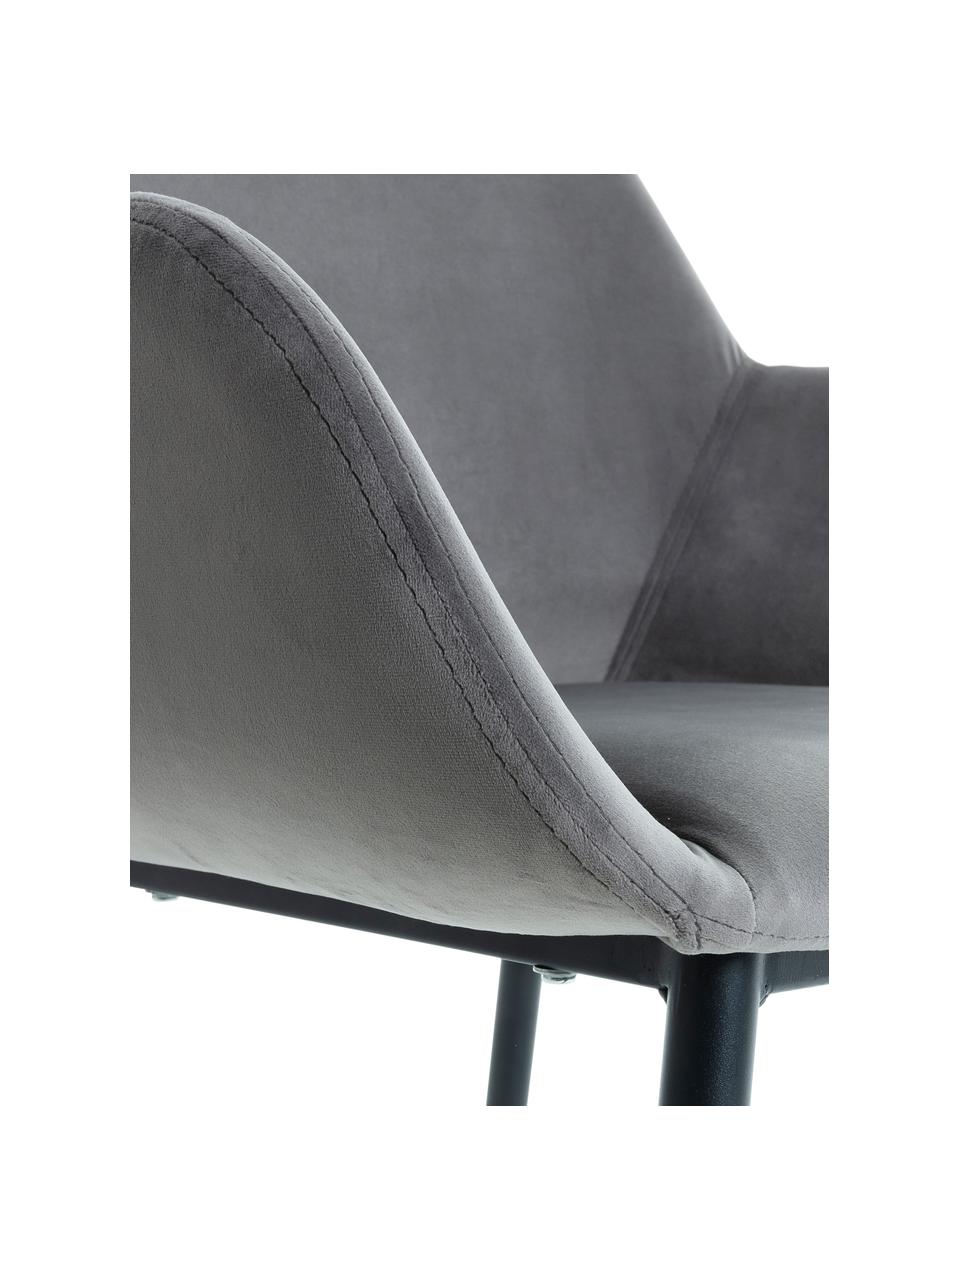 Krzesło z podłokietnikami z aksamitu Kona, 2 szt., Tapicerka: aksamit poliestrowy 50 00, Nogi: metal lakierowany, Szary, S 59 x G 52 cm